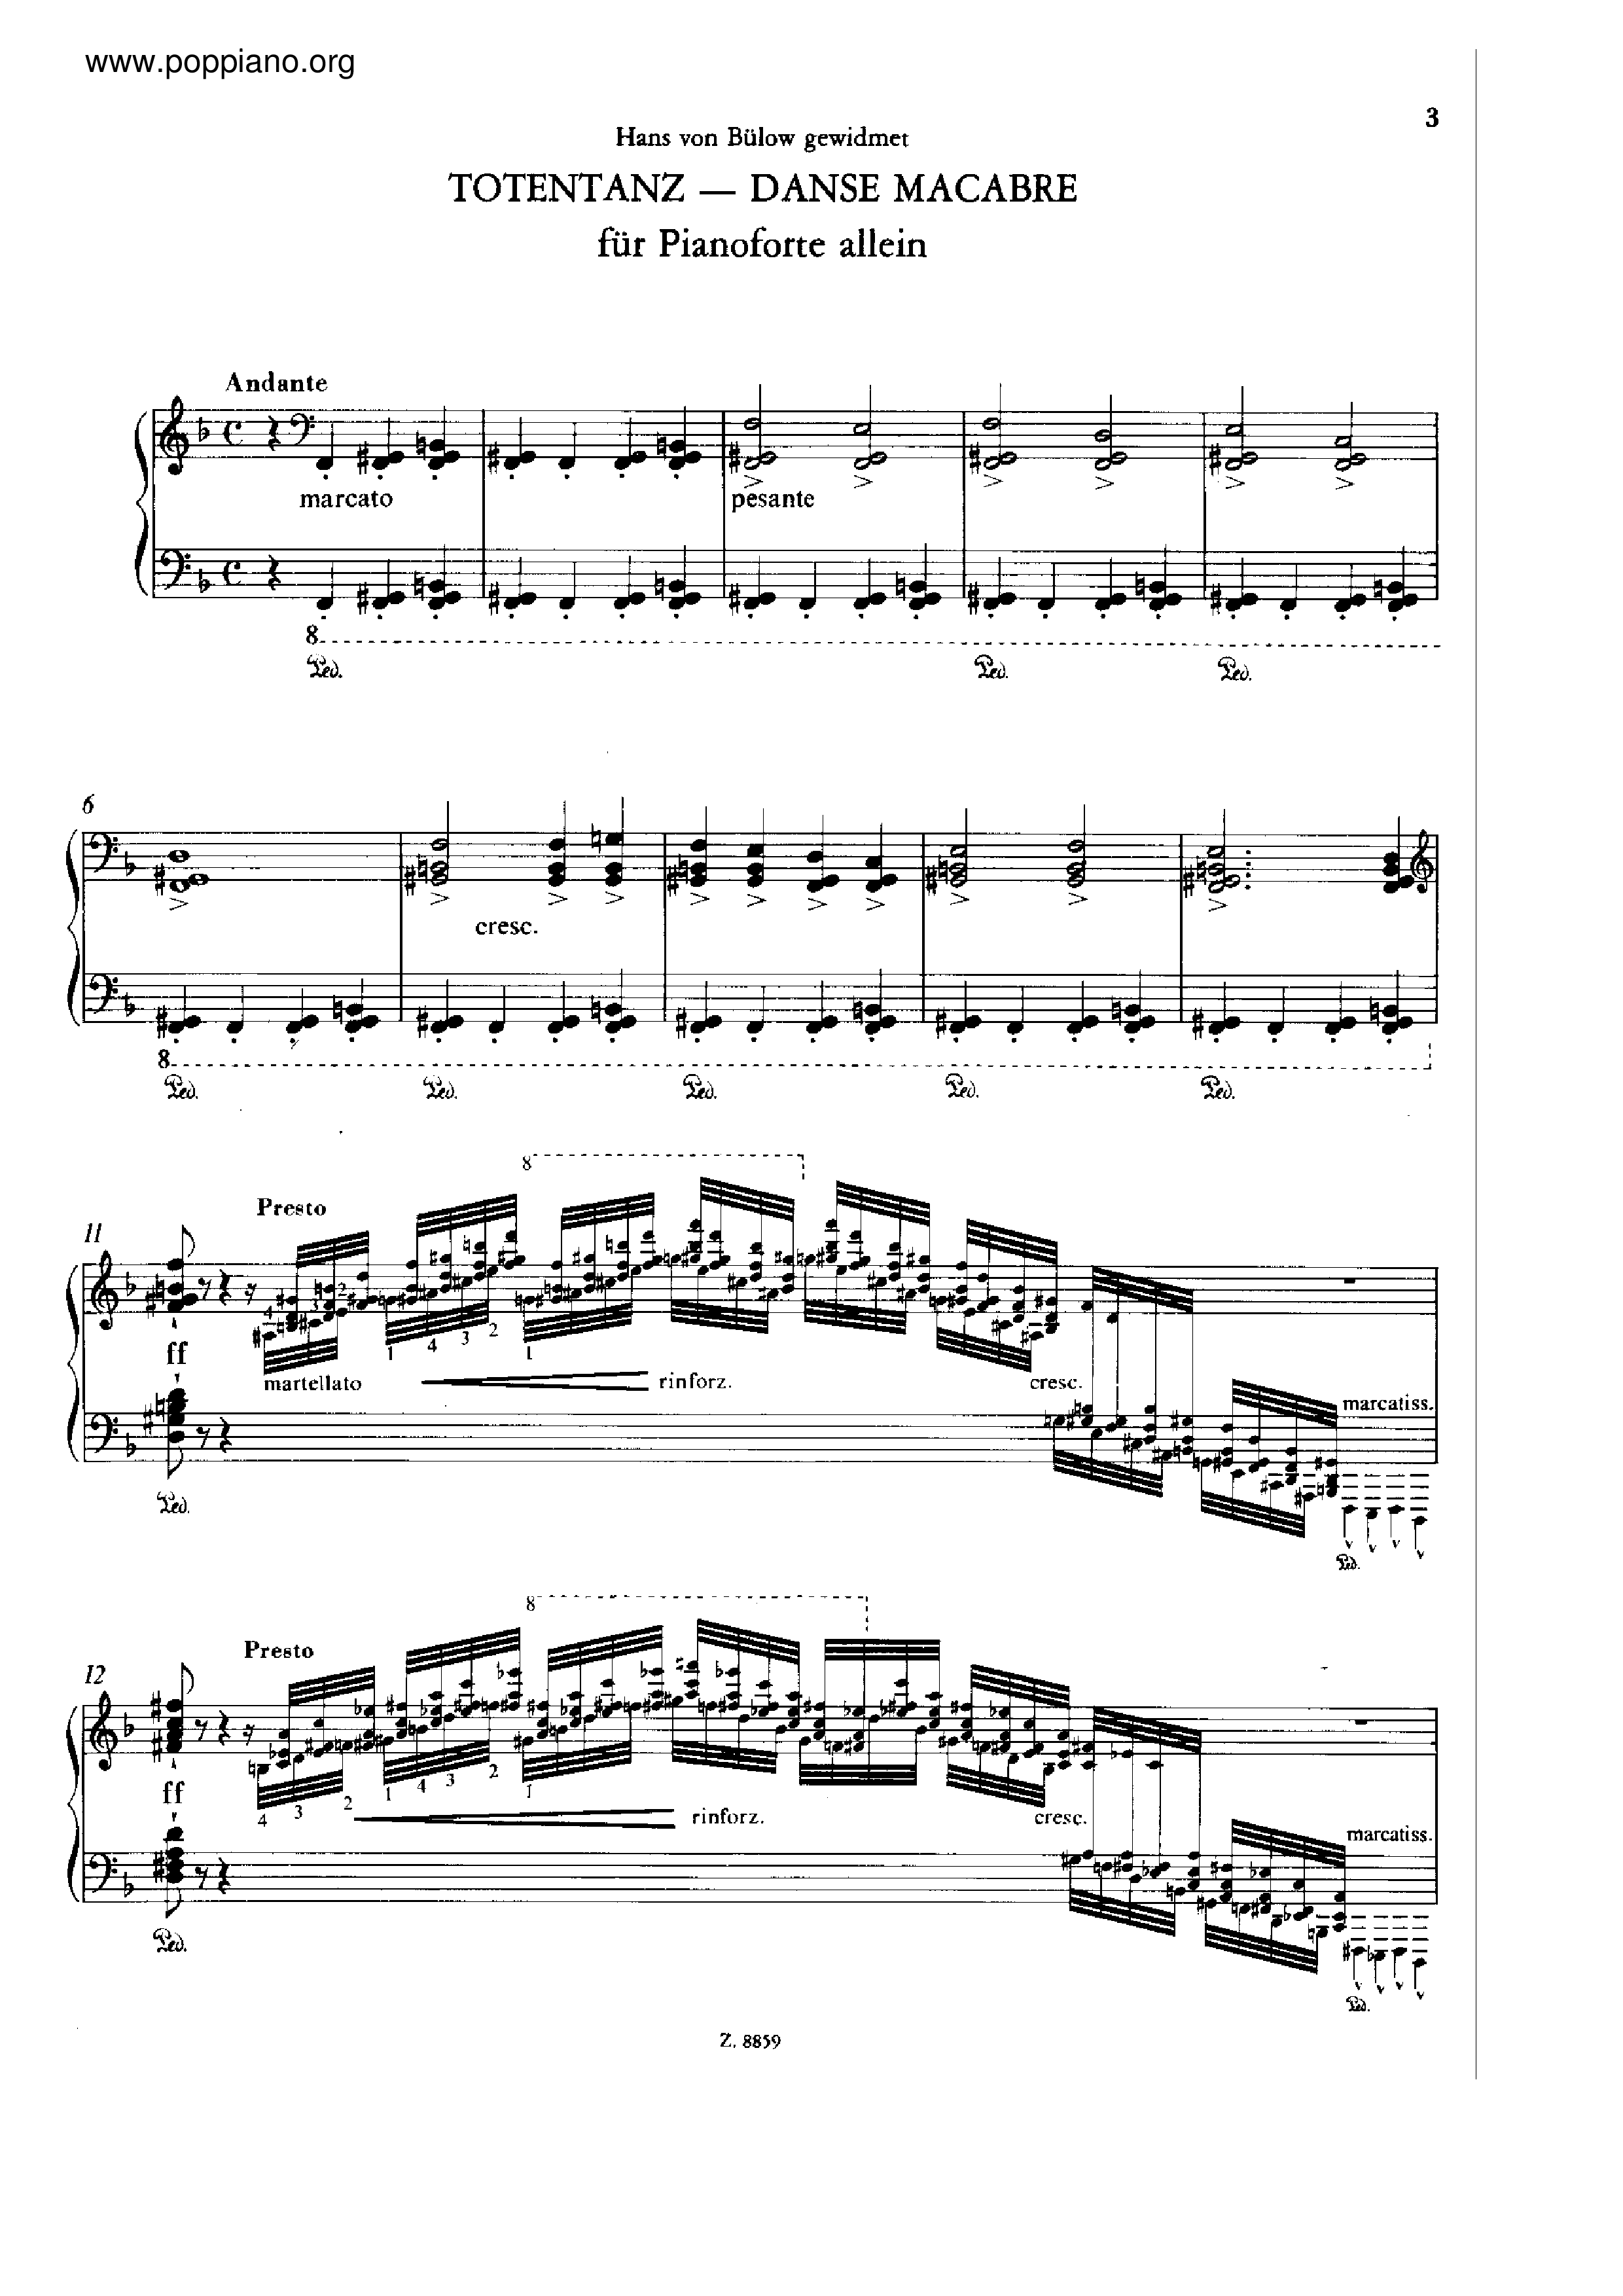 Totentanz, Solo piano, S.525 Score